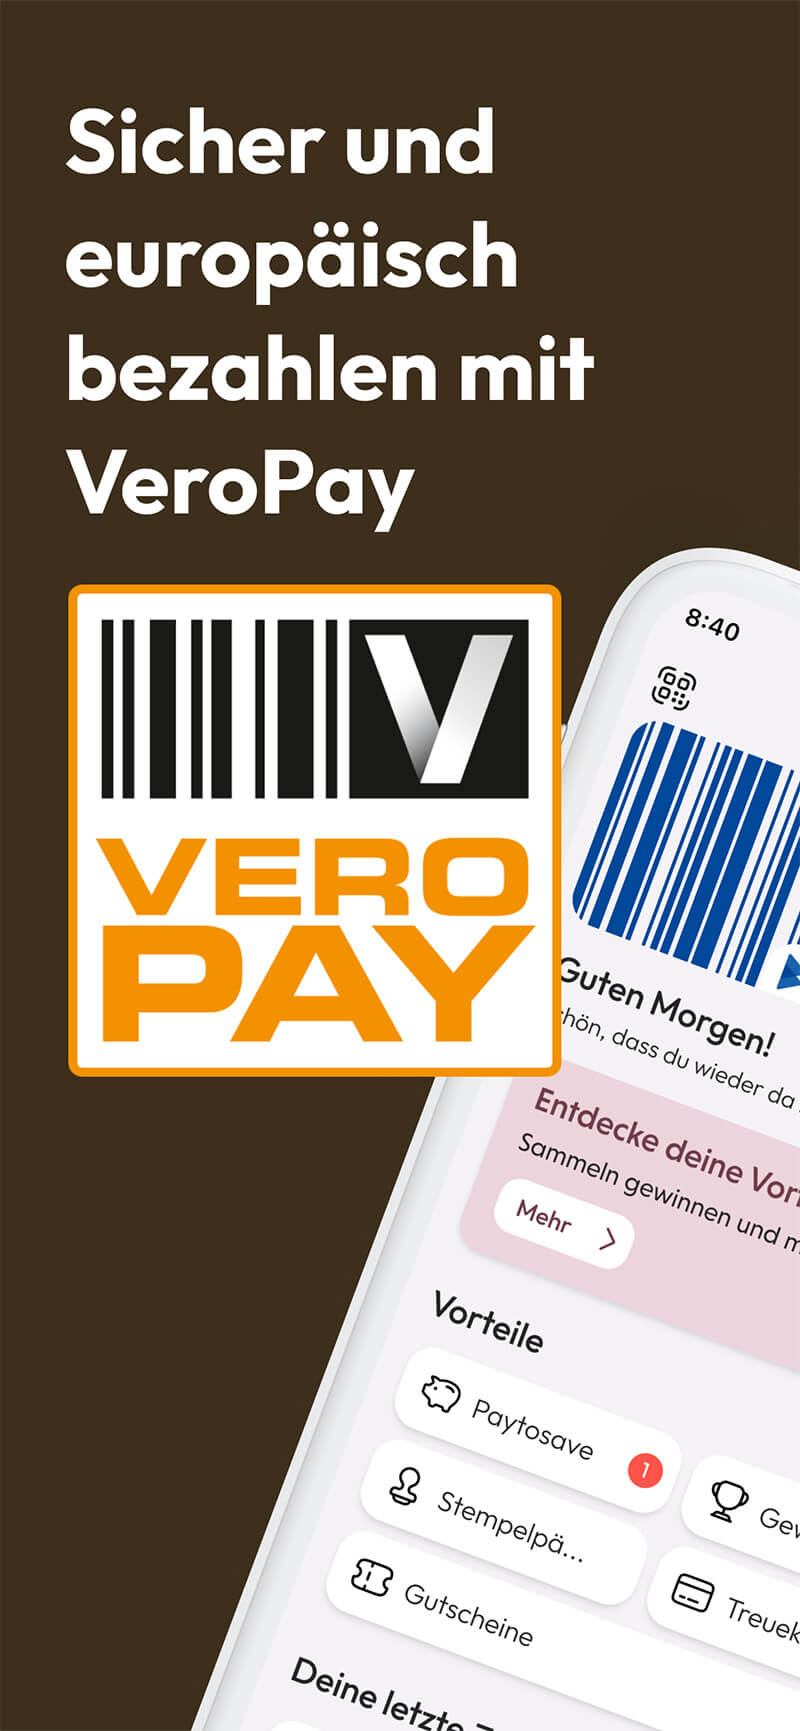 Sicher und europäisch bezahlen mit VeroPay